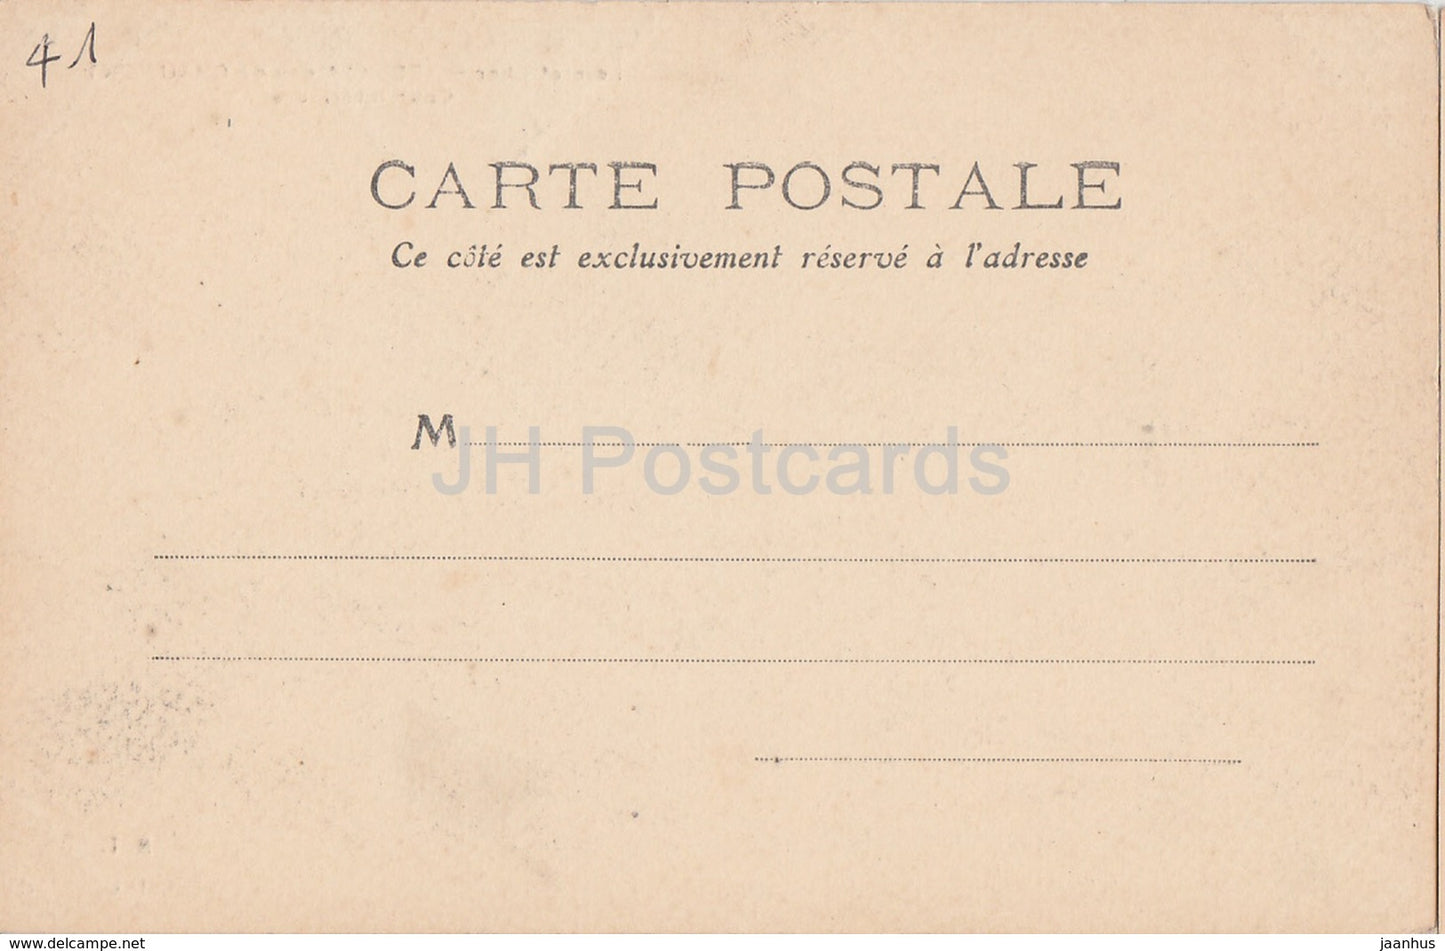 Chateau de Chaumont - Loir et Cher - Cour interieure - 135 - Schloss - alte Postkarte - Frankreich - unbenutzt